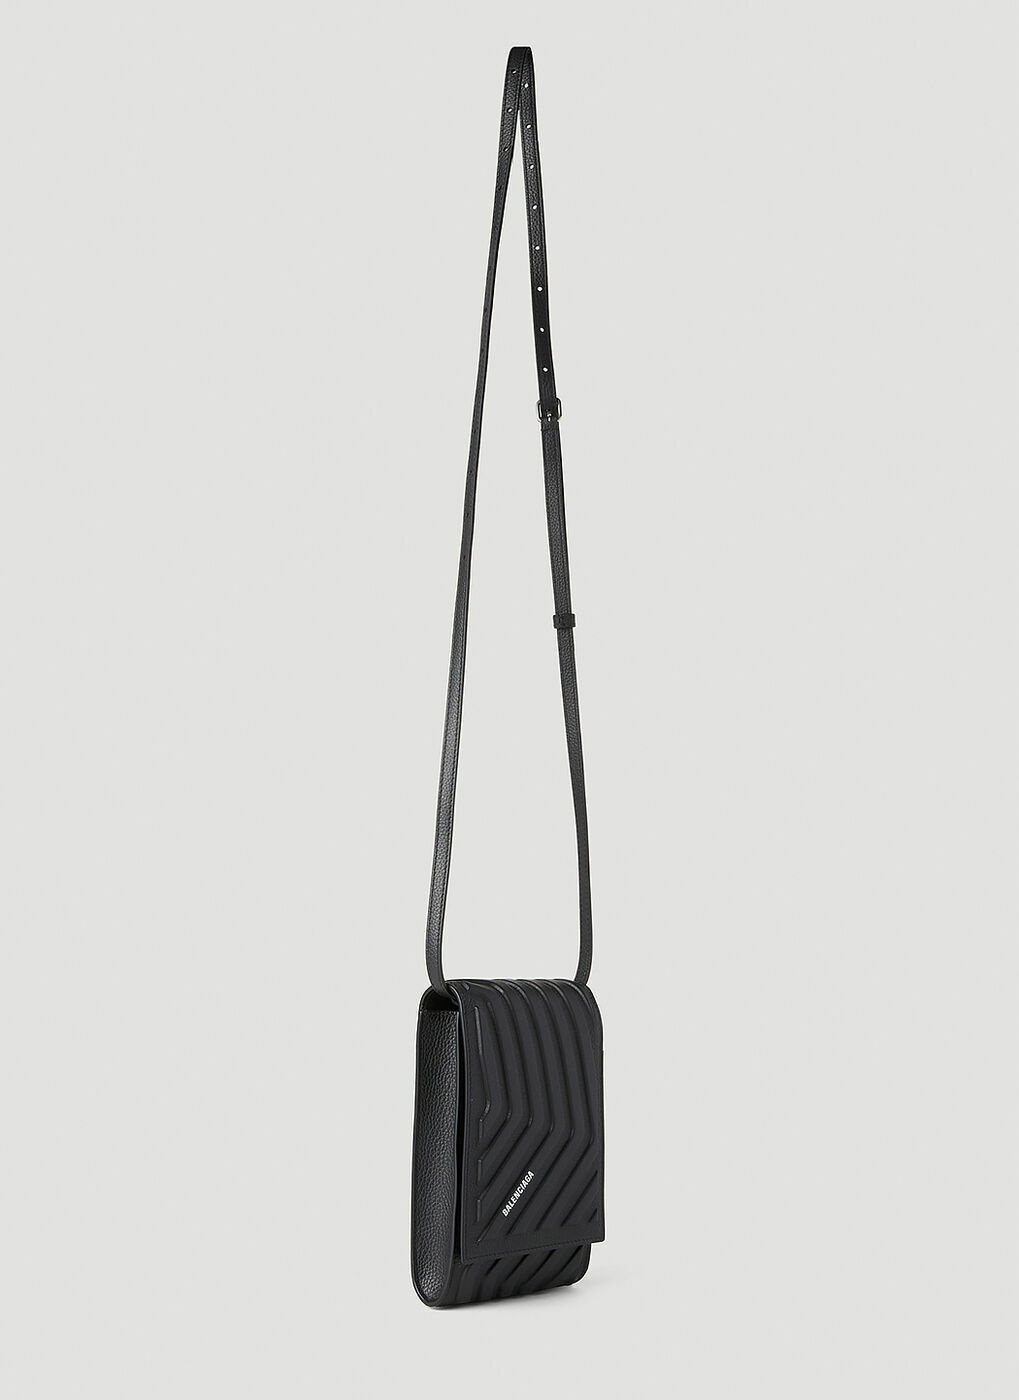 Balenciaga - Car Phone Holder in Black Balenciaga